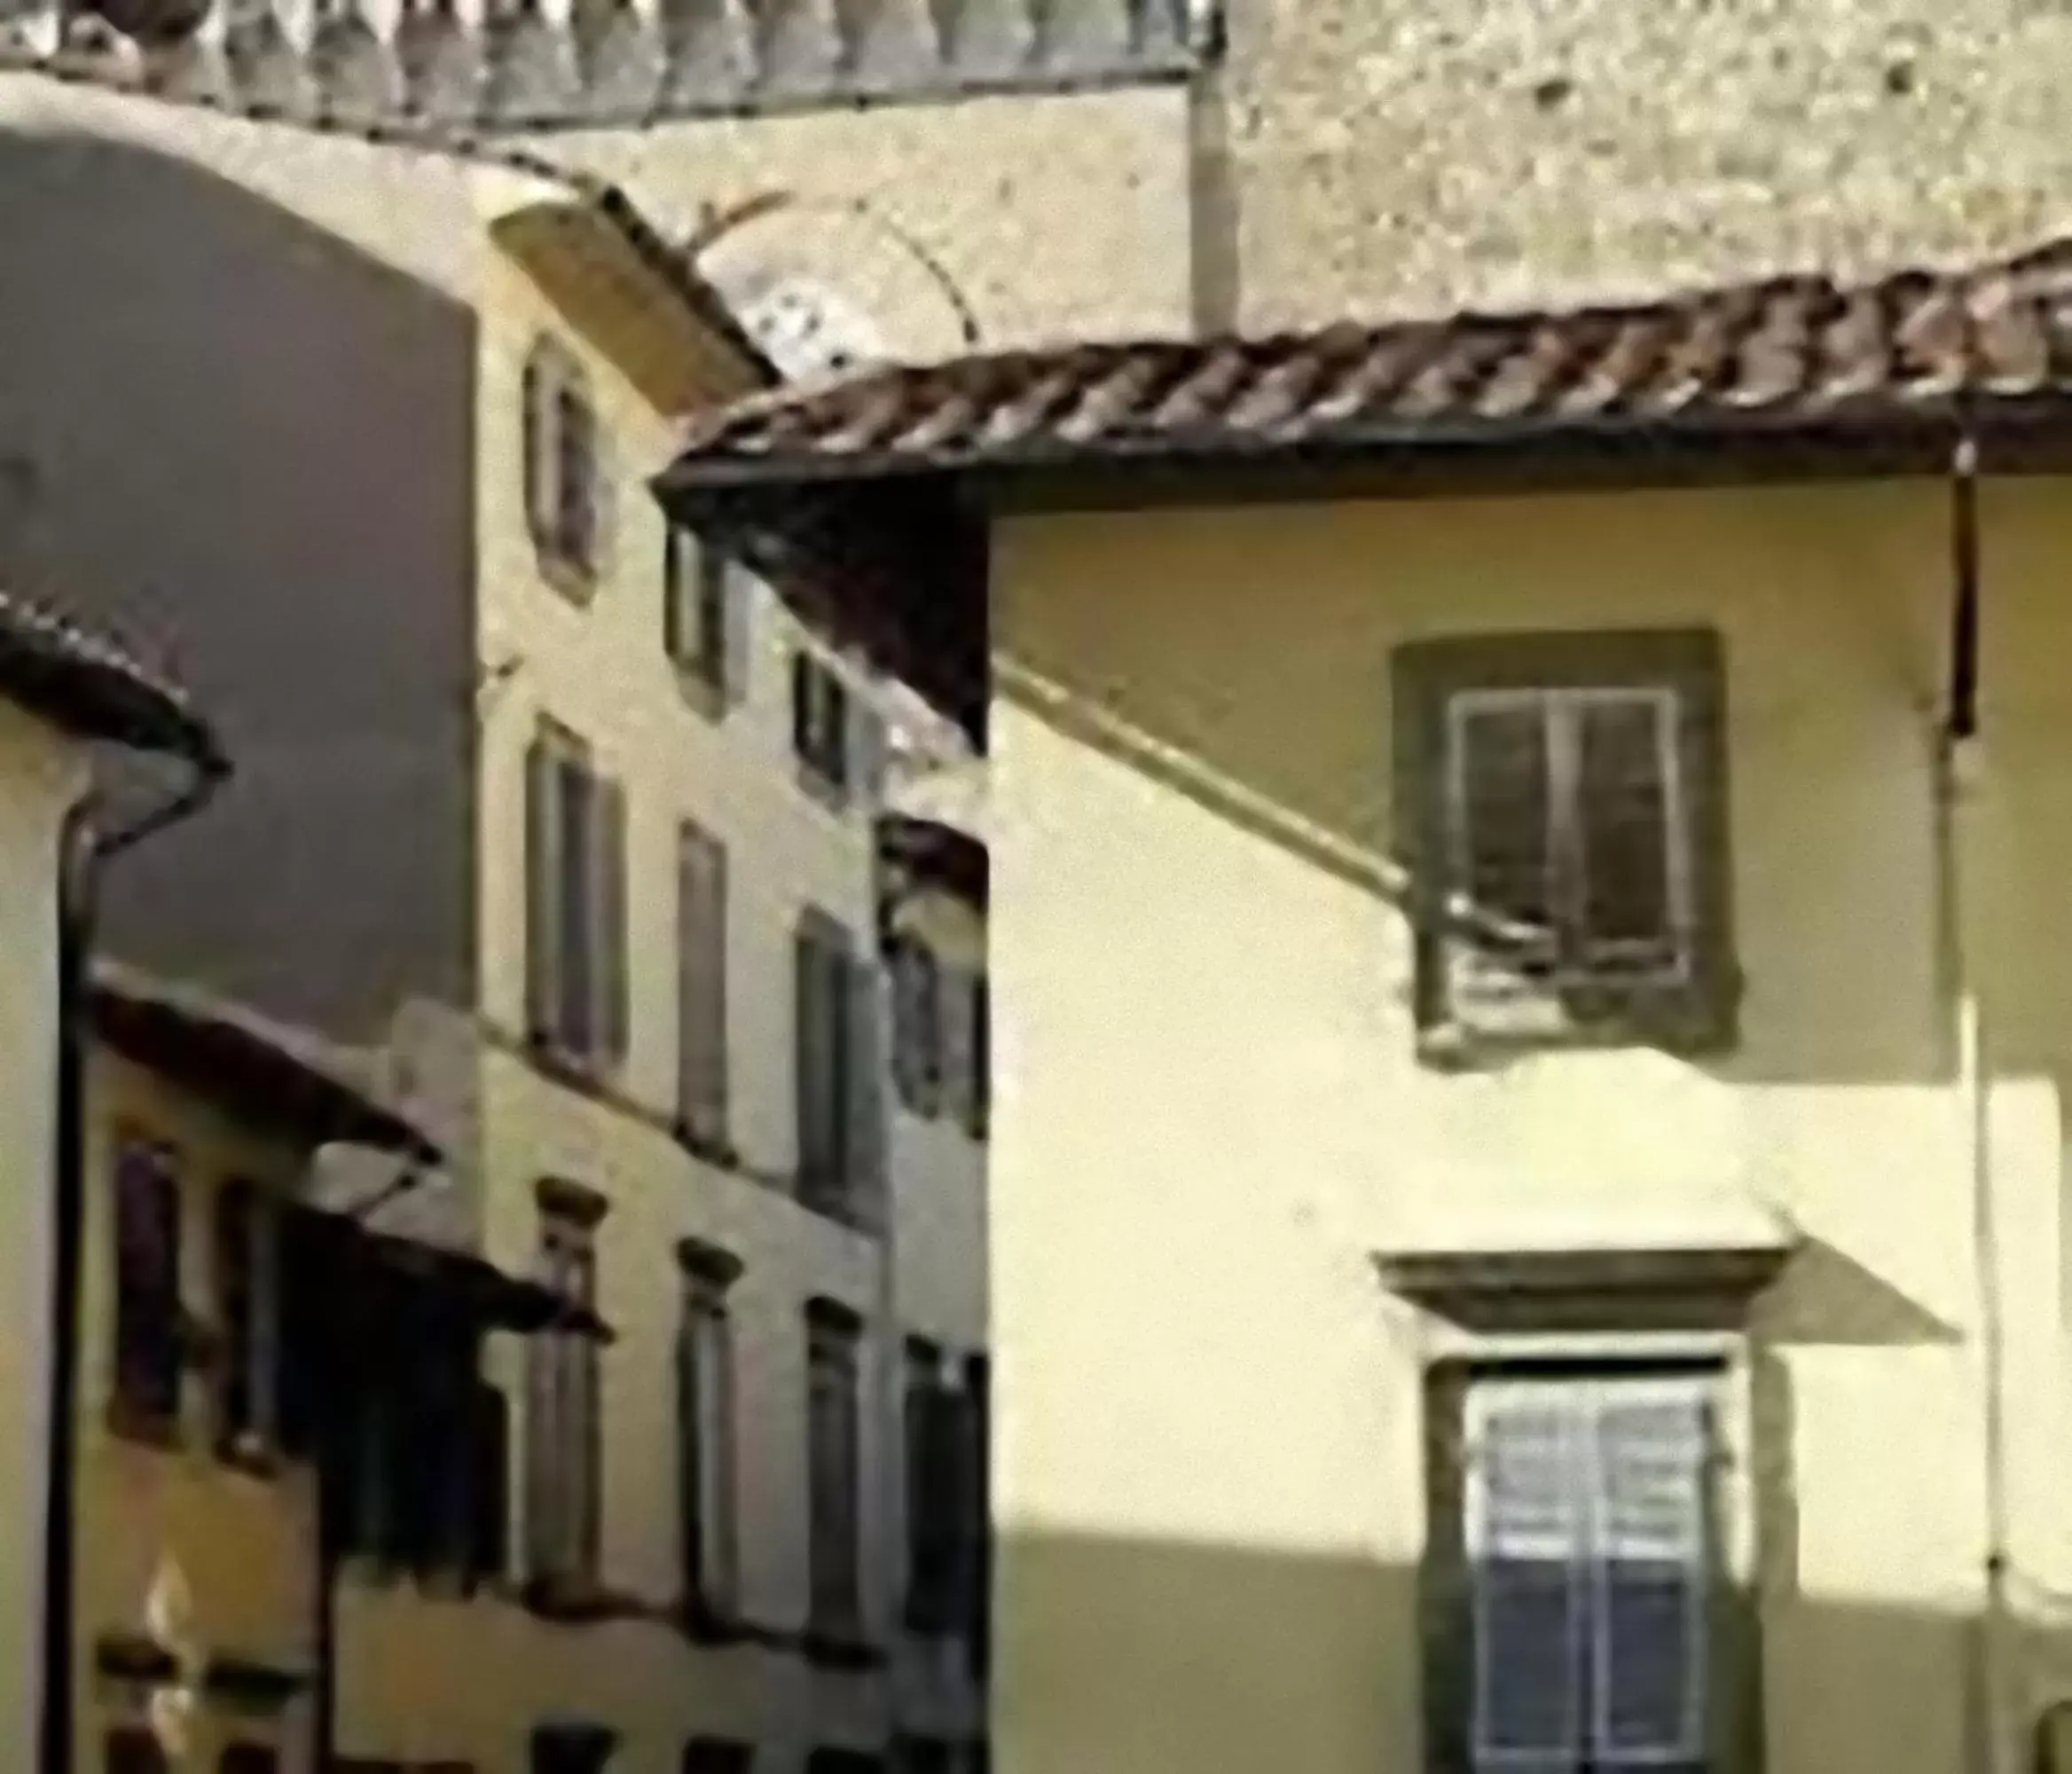 Facade/Entrance in Badia Fiorentina